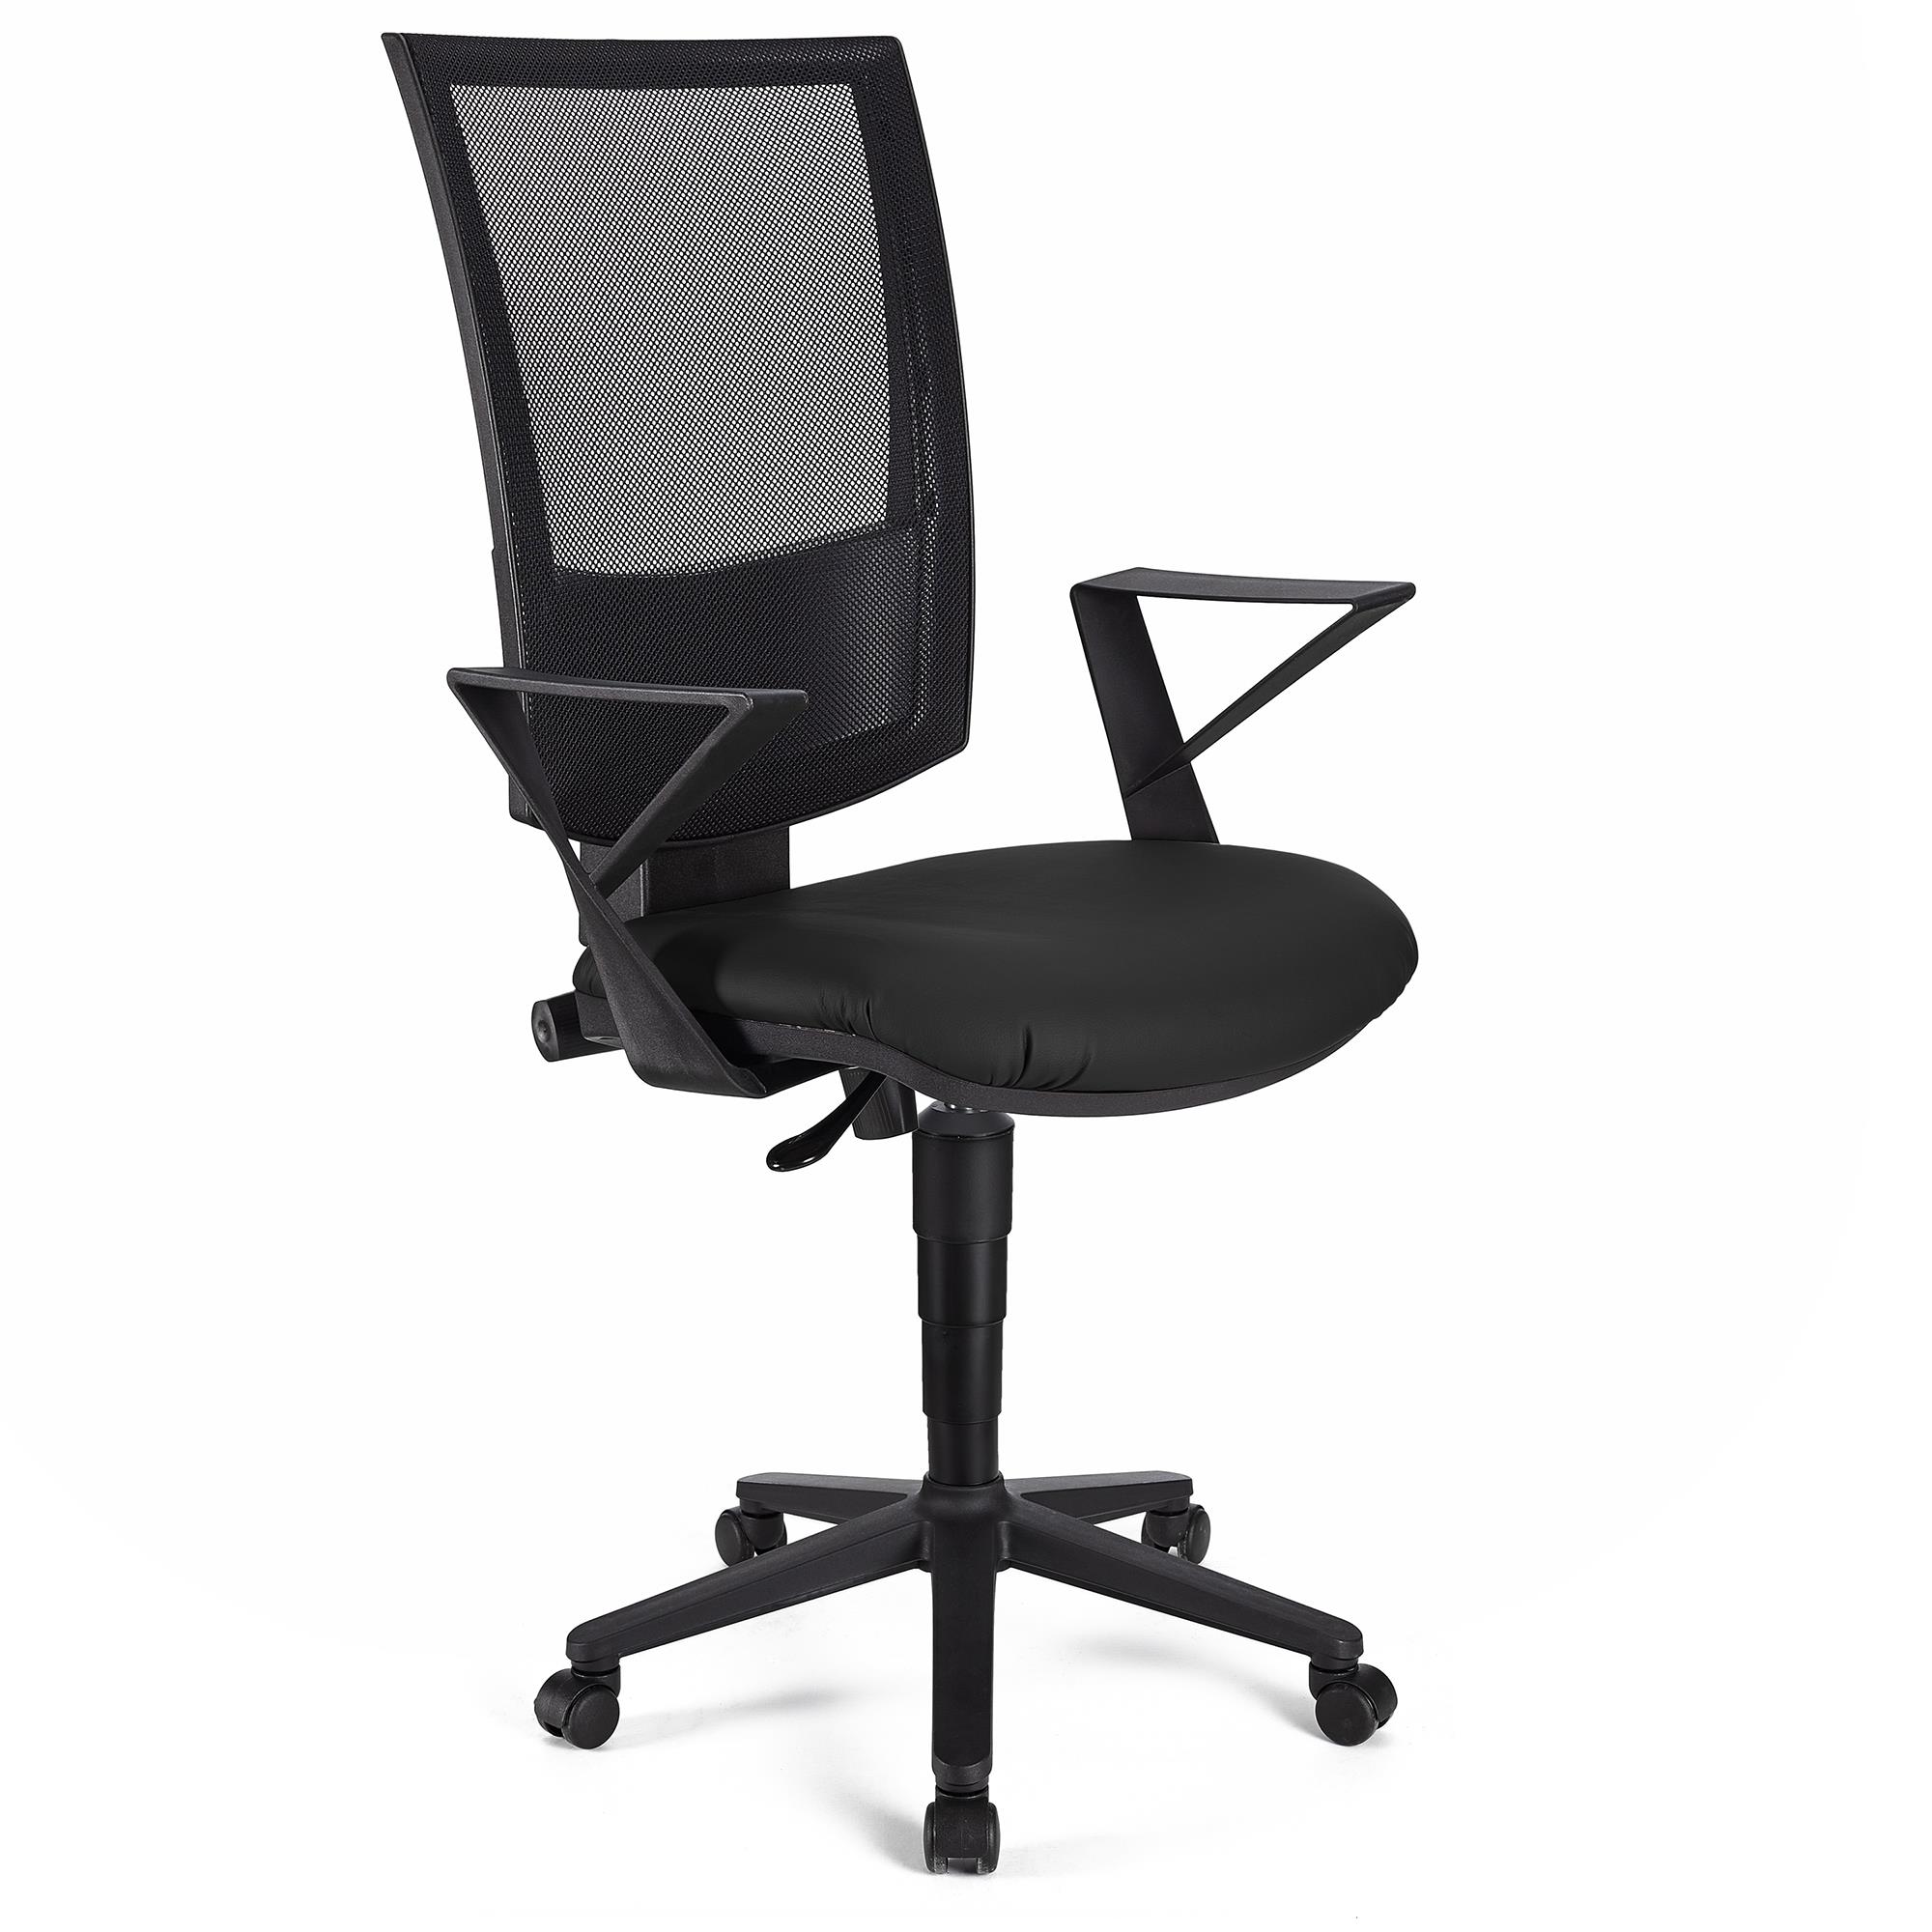 Bürostuhl PANDORA LEDER mit Armlehnen, Rückenlehne mit Netzbezug, dicke Polsterung, Farbe Schwarz